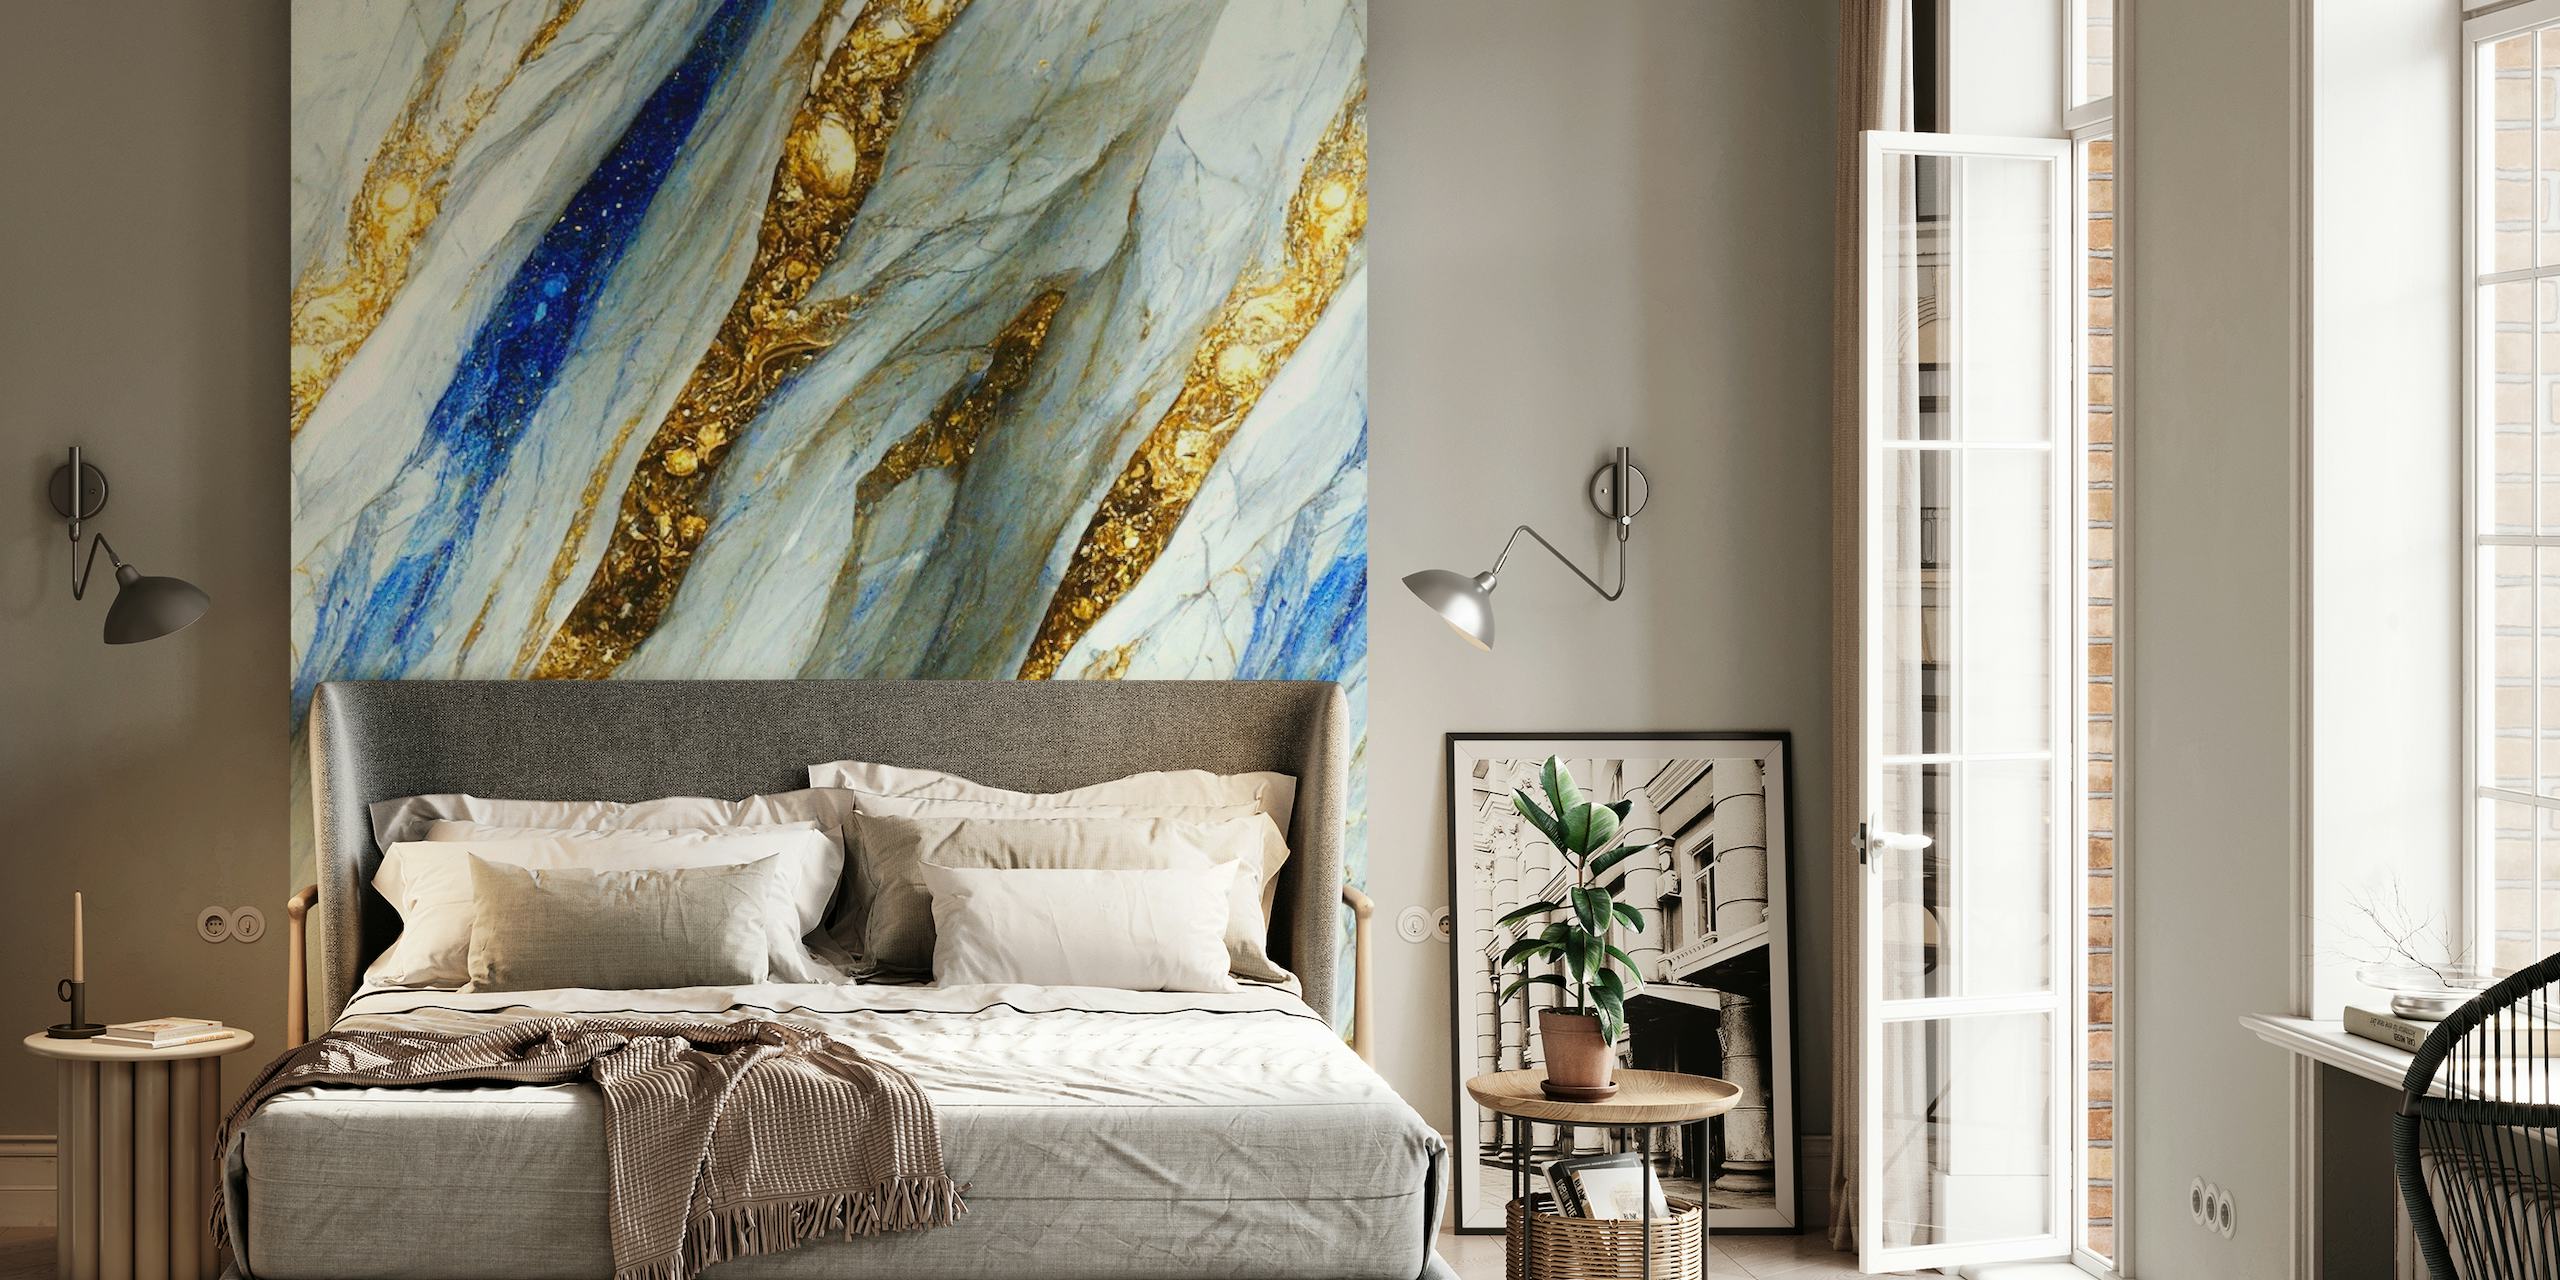 Elegantan zidni mural sa zlatnim, plavim i bijelim mramornim uzorcima koji podsjećaju na tekuće rijeke tekućeg zlata i dragog kamenja.